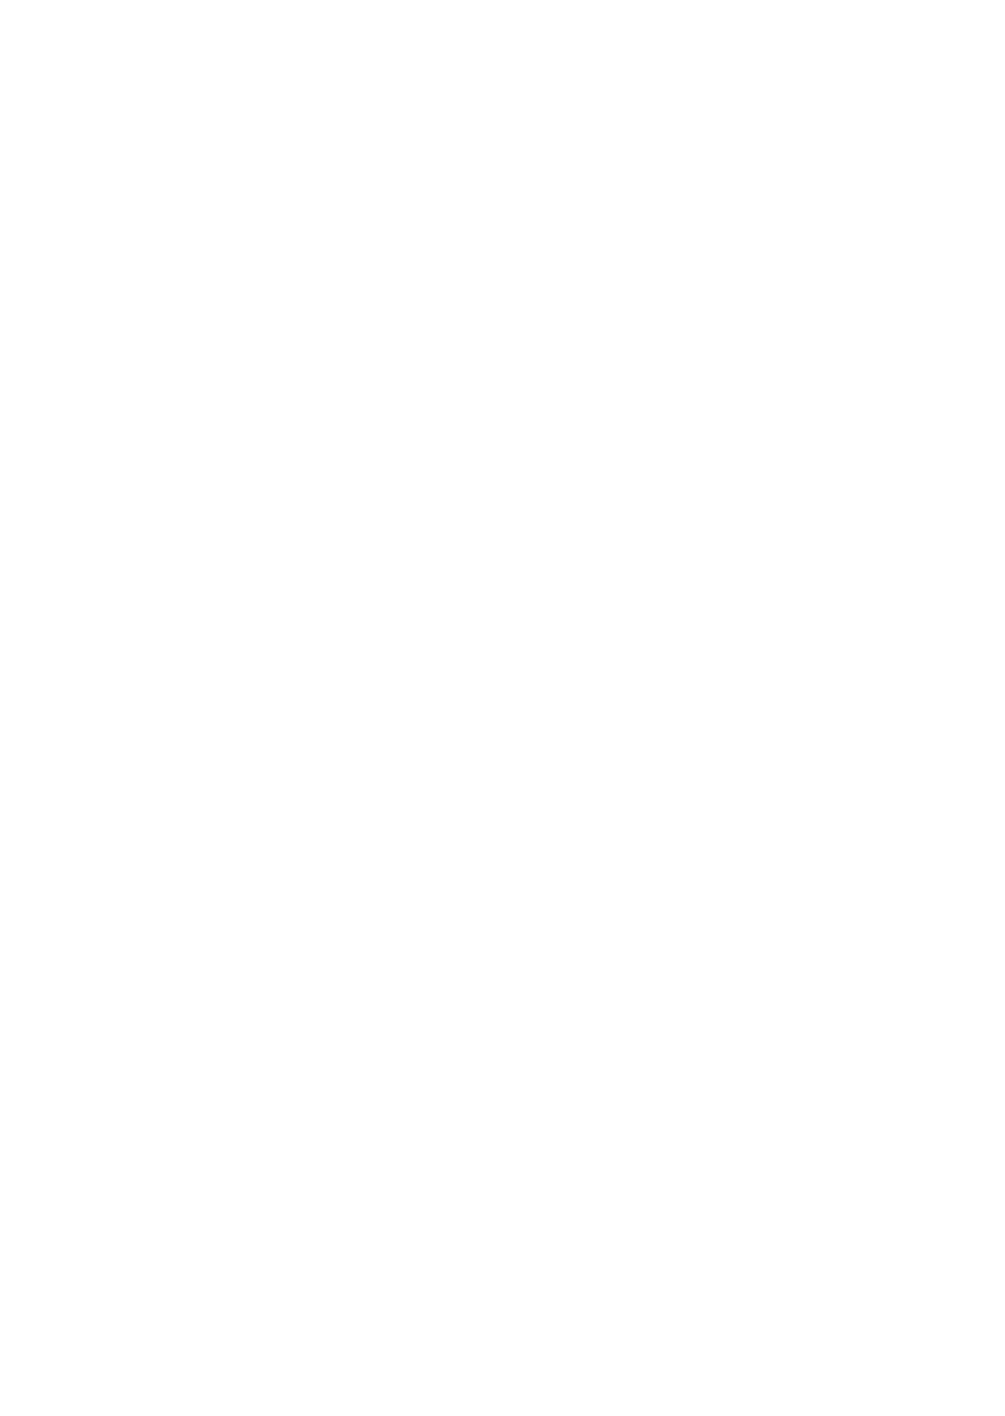 Solvac logo for dark backgrounds (transparent PNG)